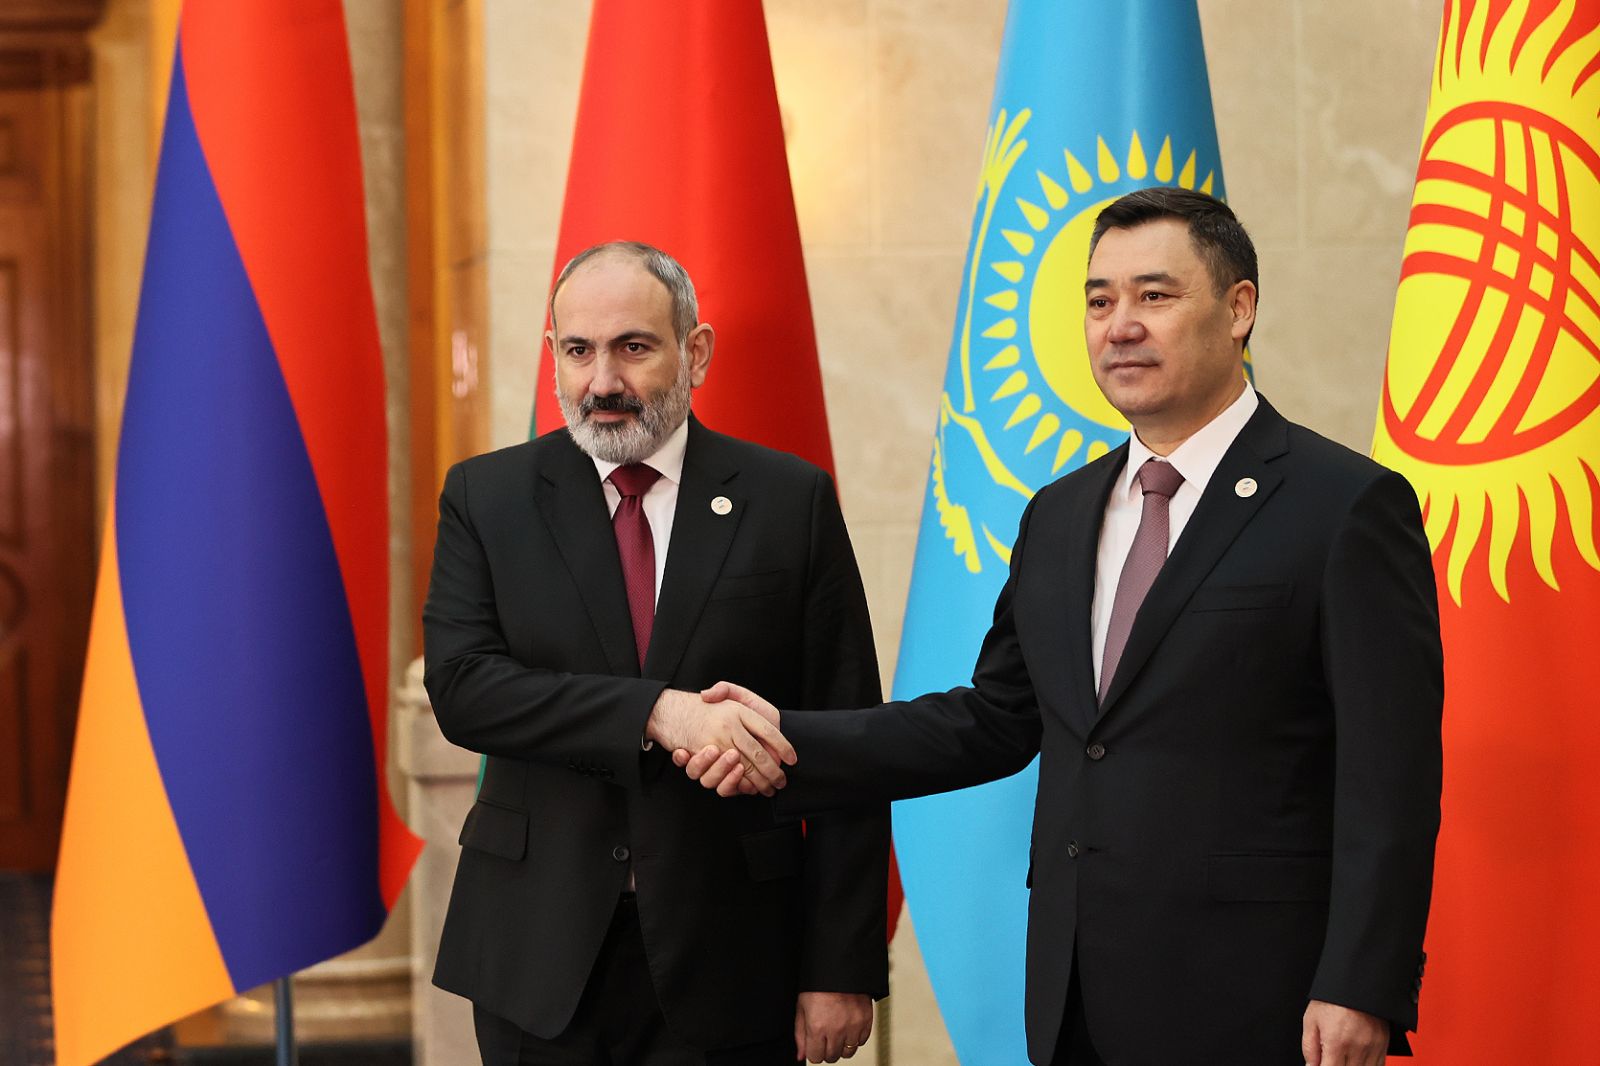 Հայաստանն ու Ղրղզստանը փոխշահավետ համագործակցության նշանակալի փորձ են կուտակել. Փաշինյան